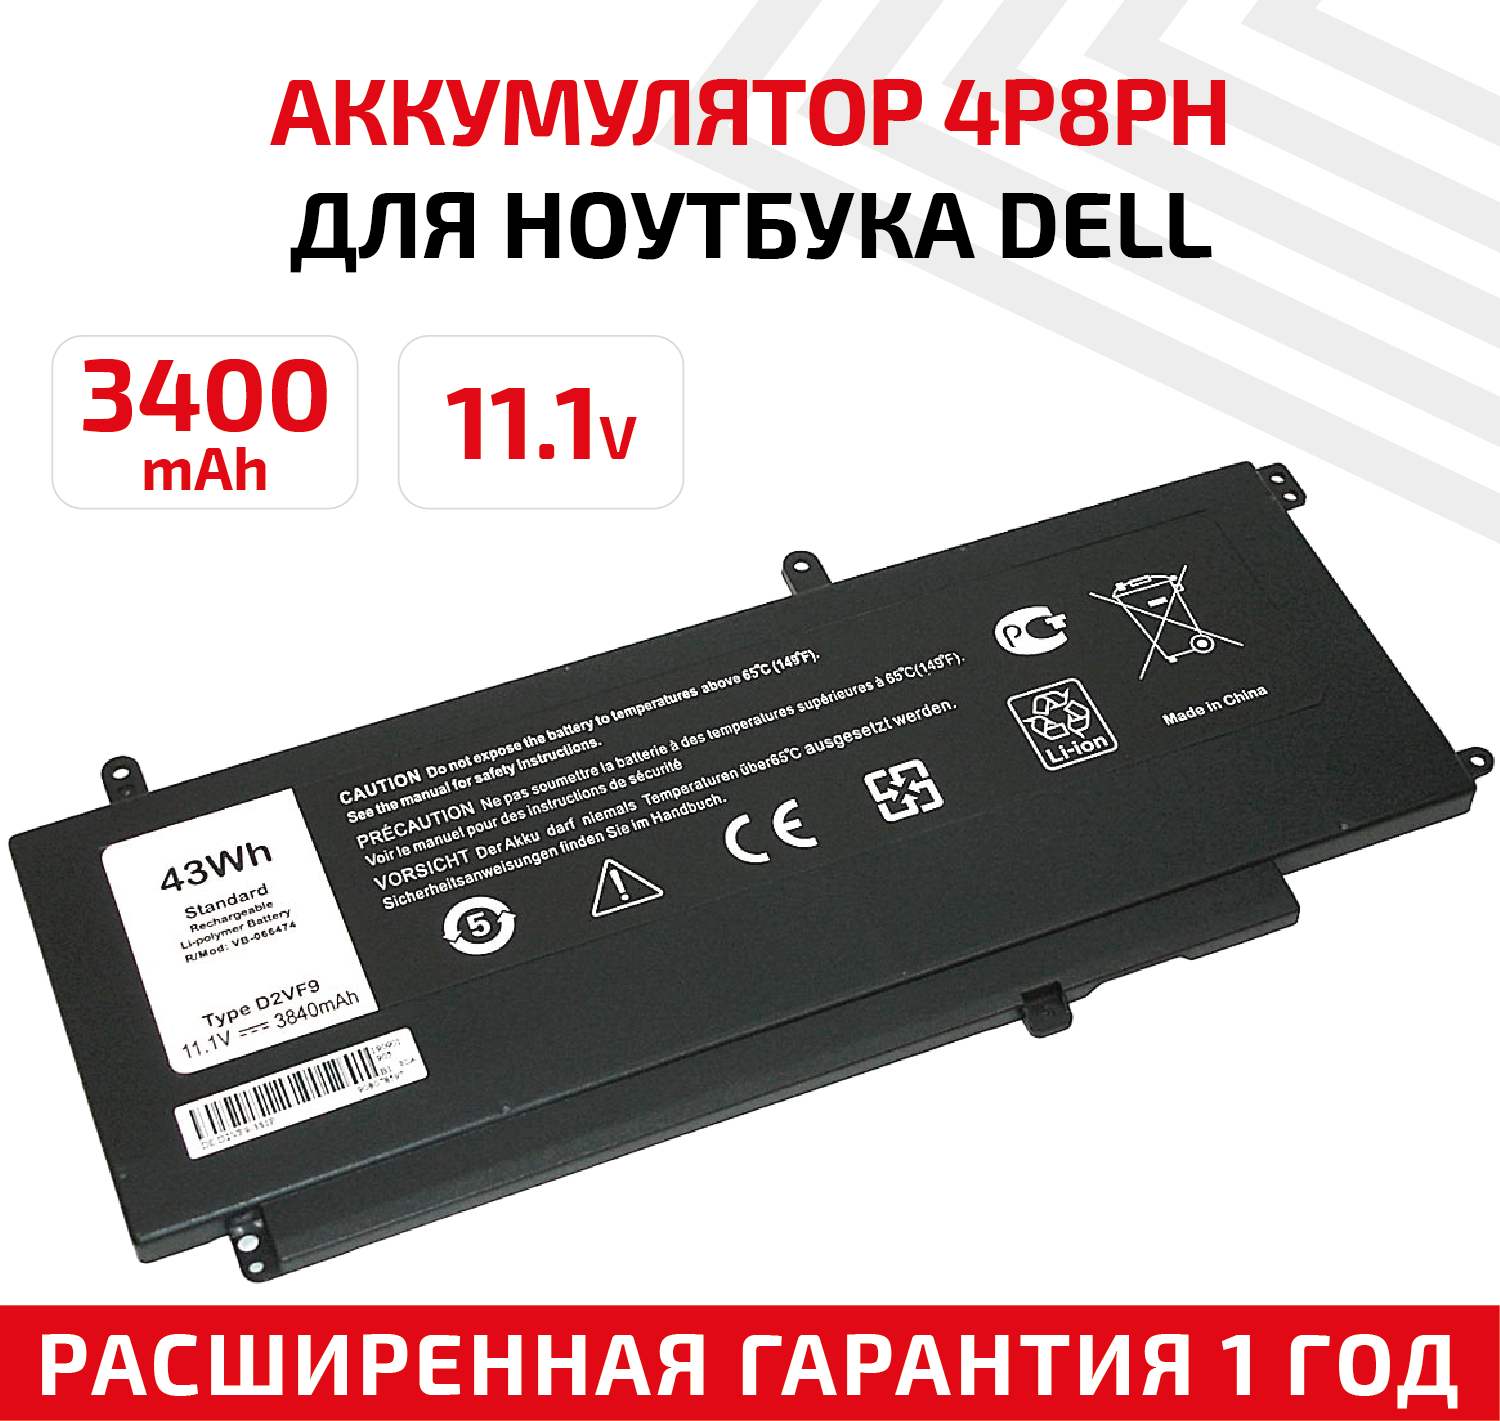 Аккумулятор (АКБ, аккумуляторная батарея) 4P8PH для ноутбука Dell Vostro 14 5000, 11.1В, 43Вт, 3400мАч